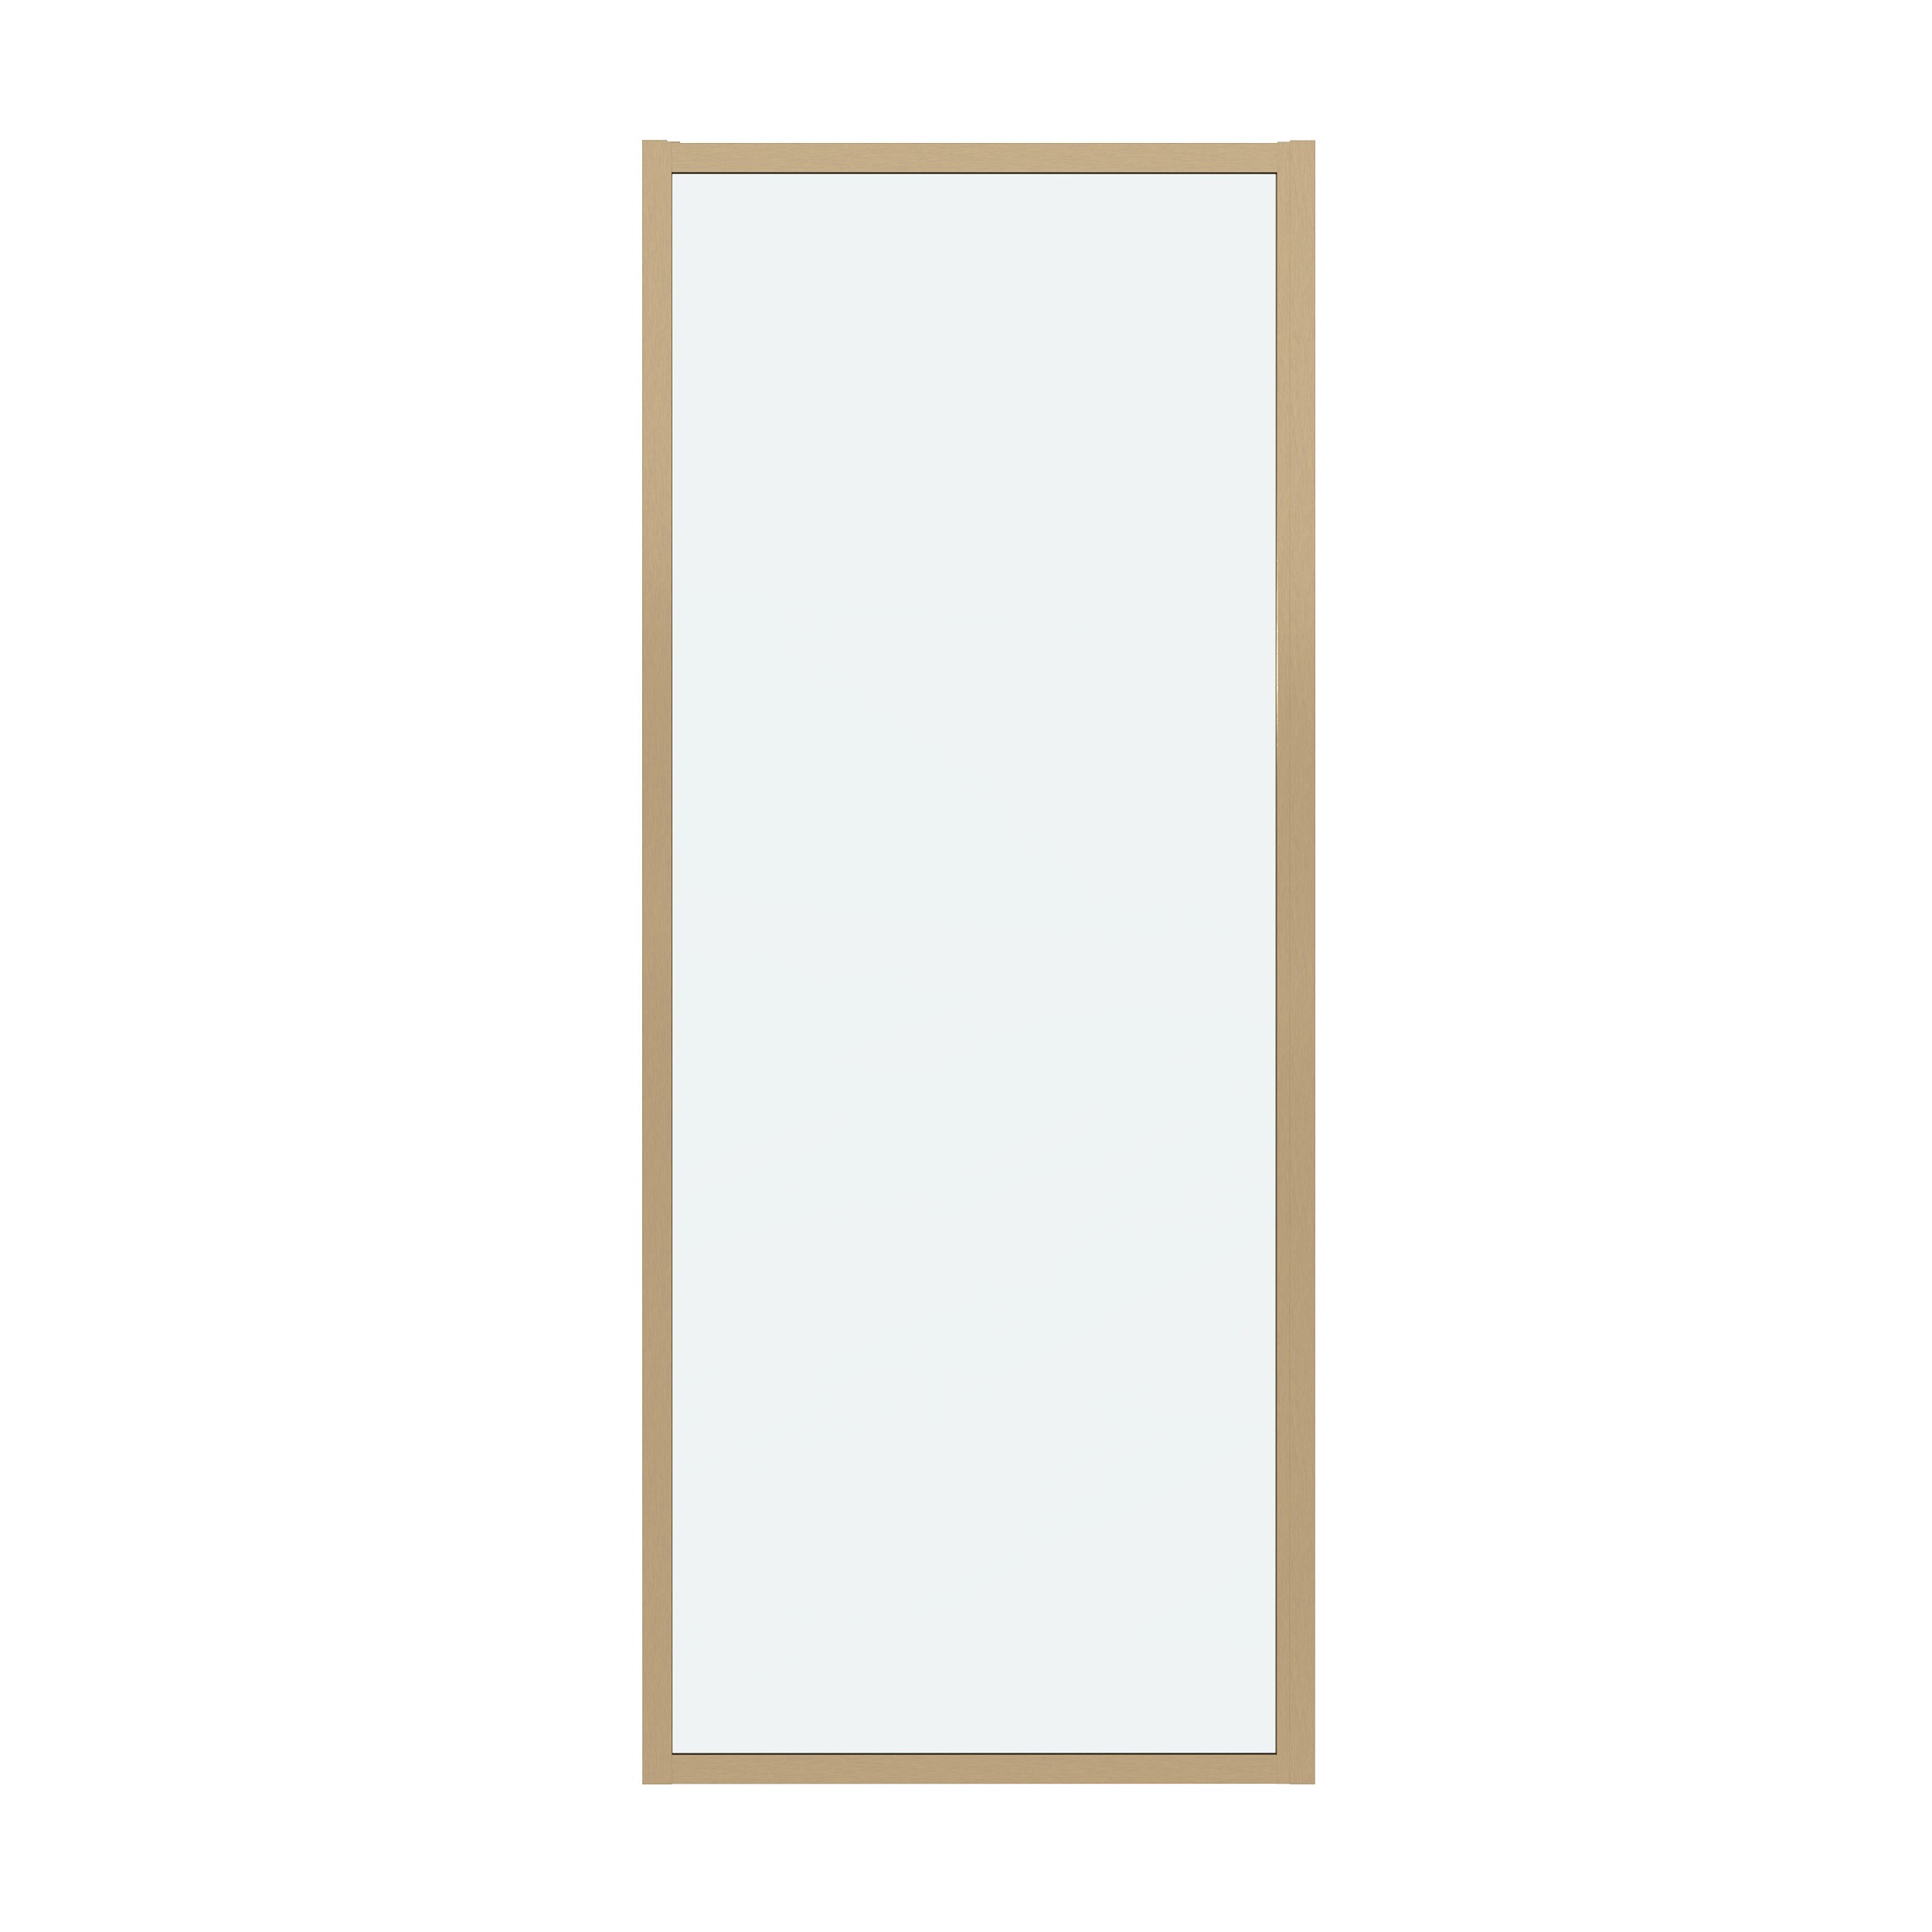 Боковая стенка Grossman Cosmo 80x195 200.K33.02.80.32.00 стекло прозрачное, профиль золото